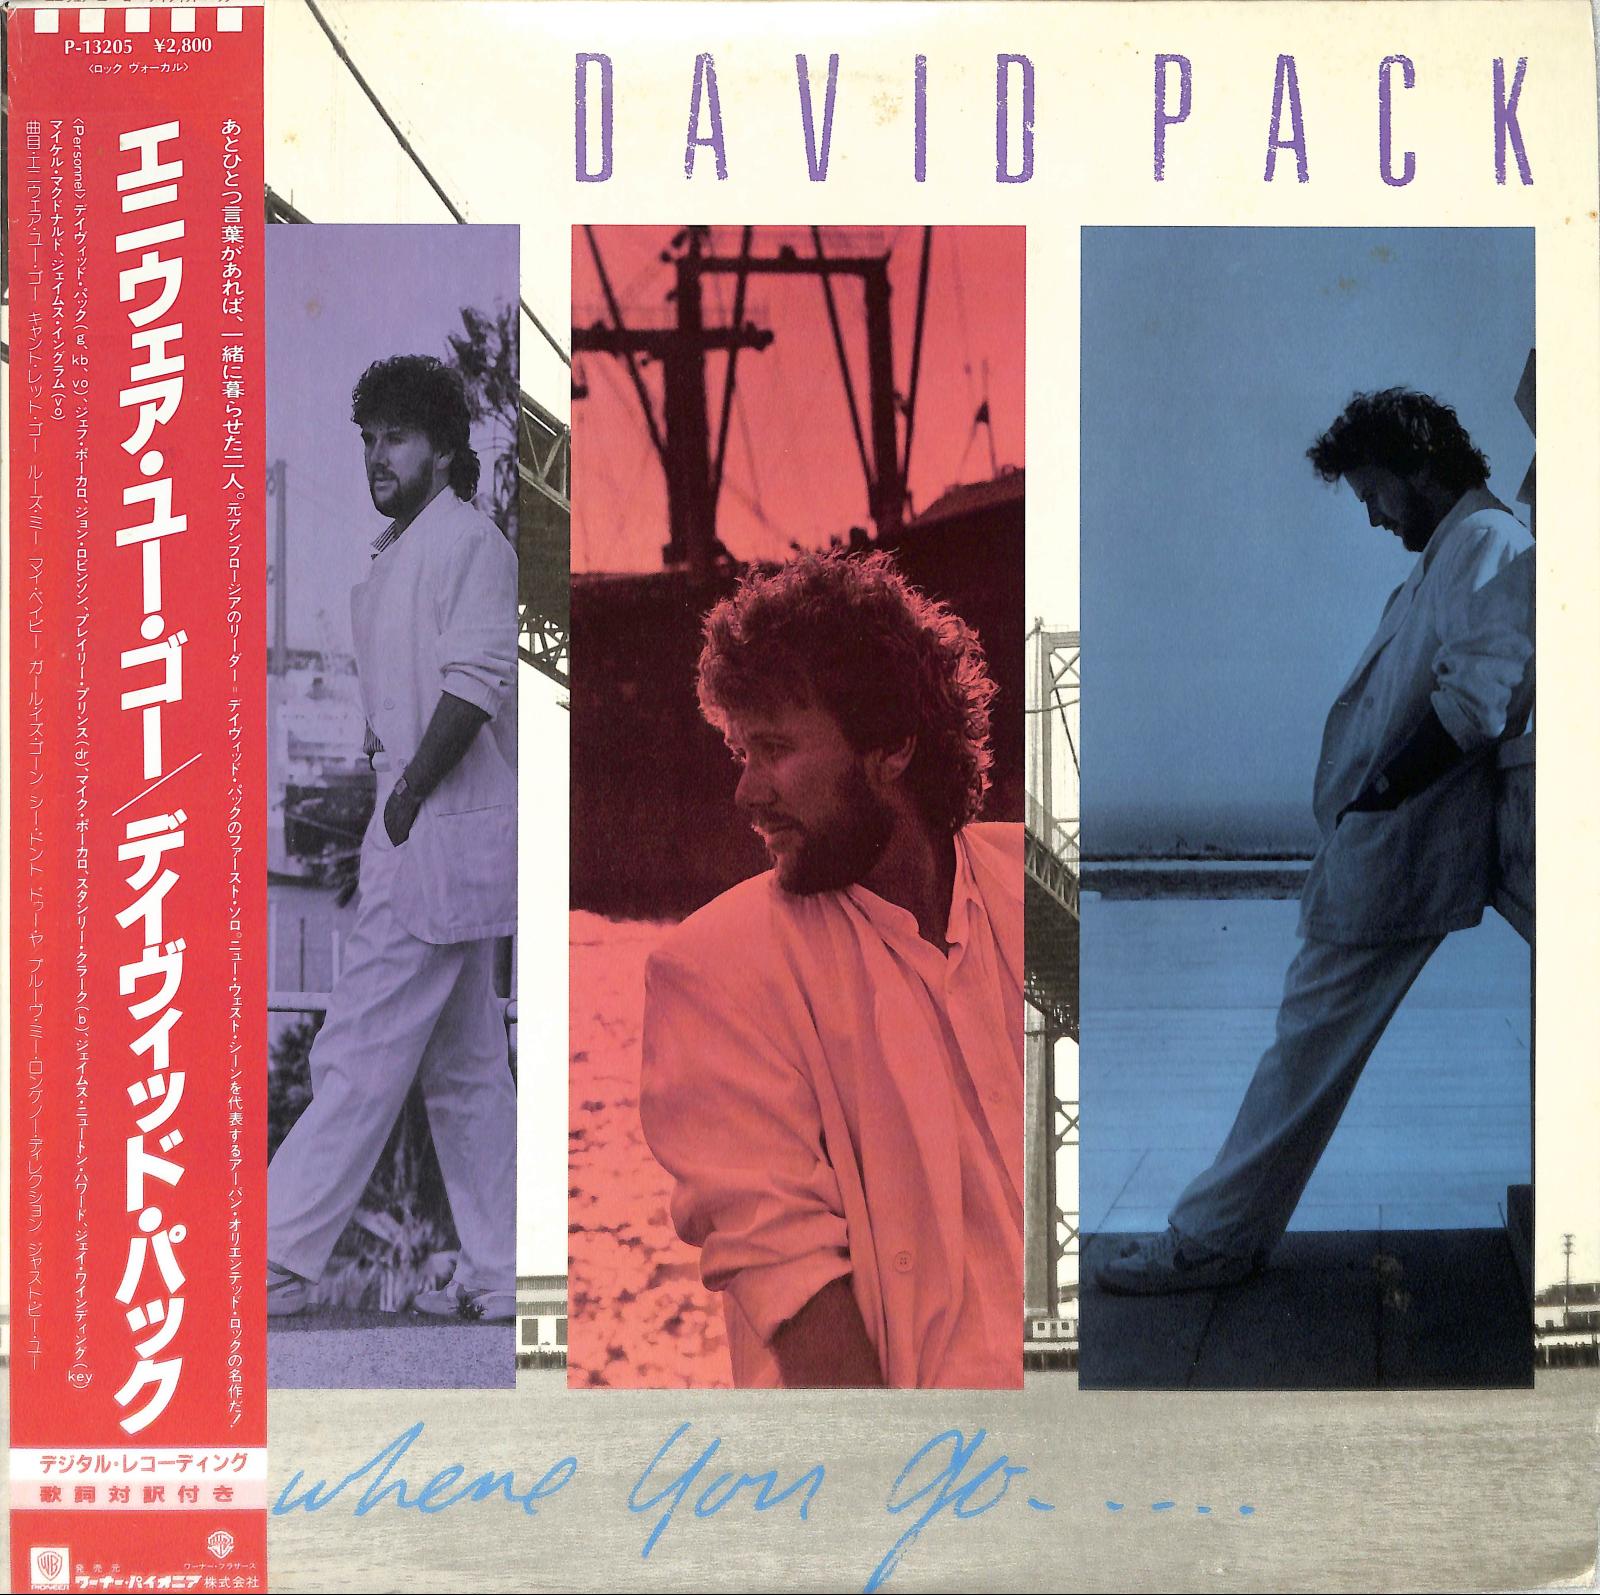 DAVID PACK - Anywhere You Go....